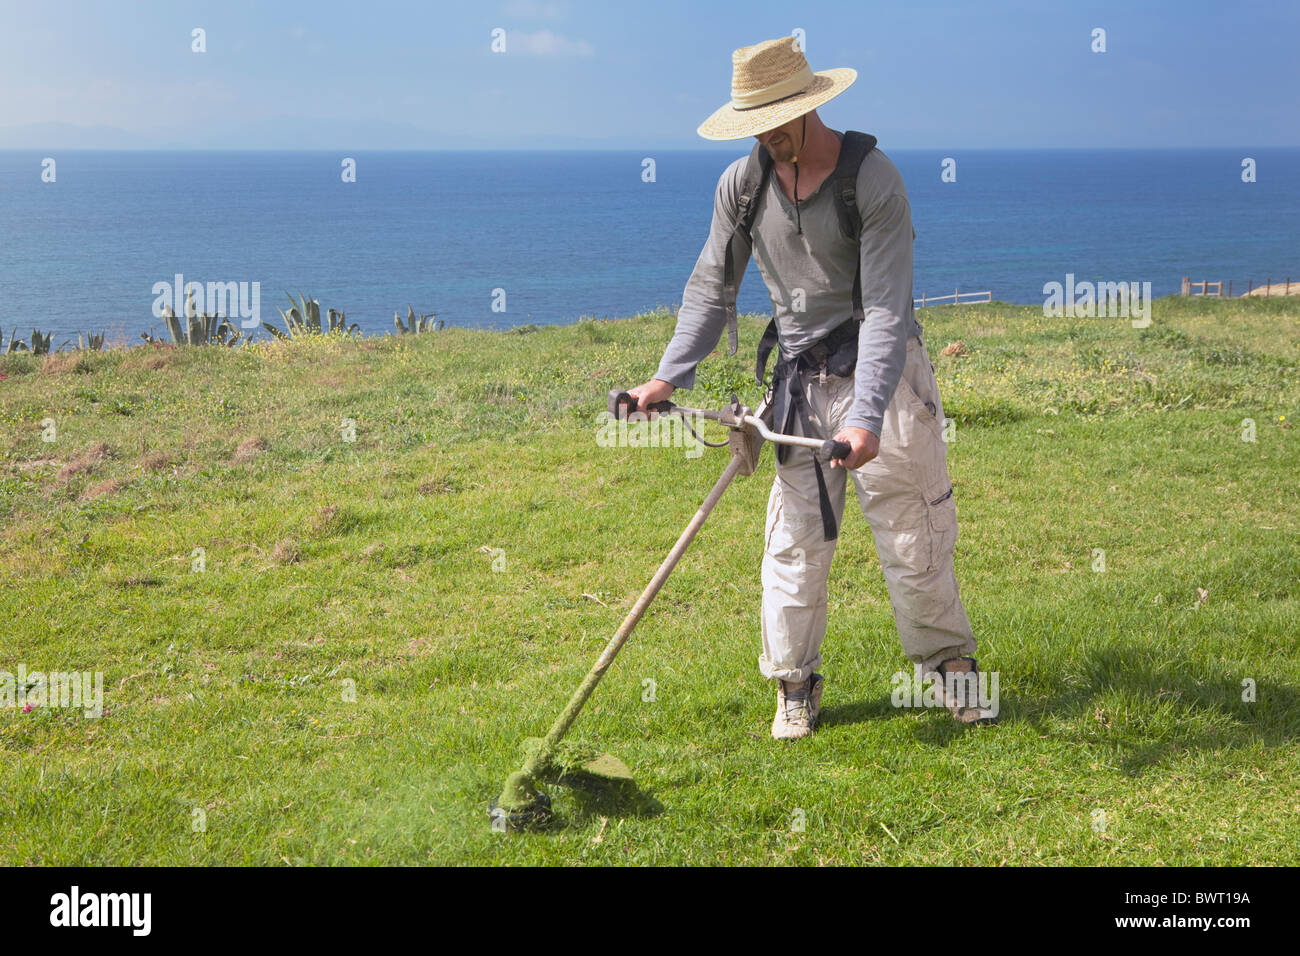 Hombre strimming hierba con ocean detrás Foto de stock